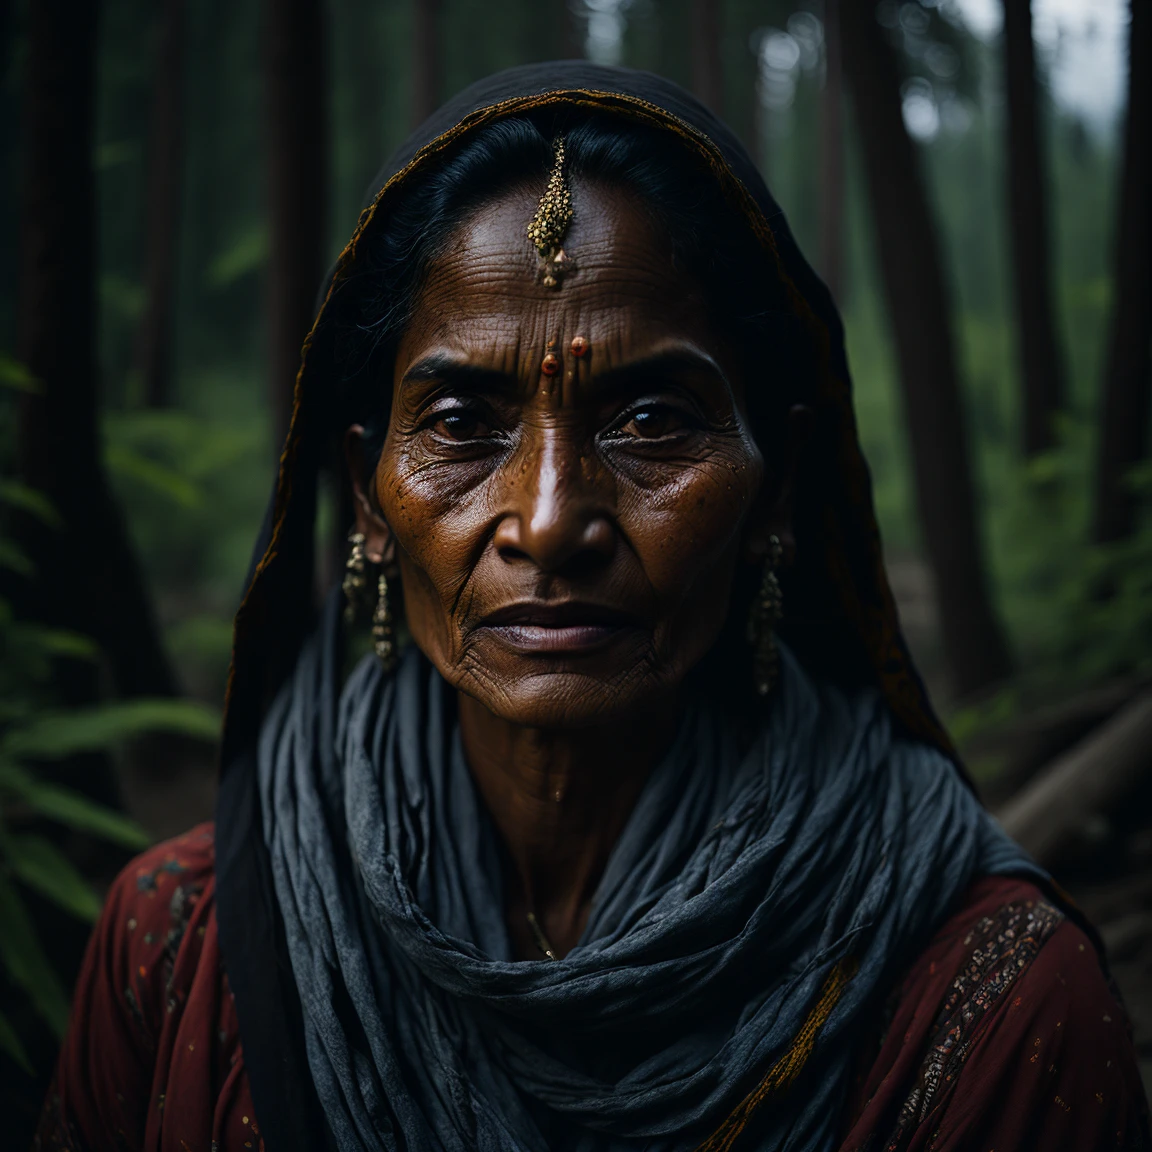 portrait oж an indian village woman in жorest in Himachal pradesh, clear жacial жeatures, Кинематографический, Объектив 35 мм, ж/1.8, Акцентное освещение, глобальное освещение